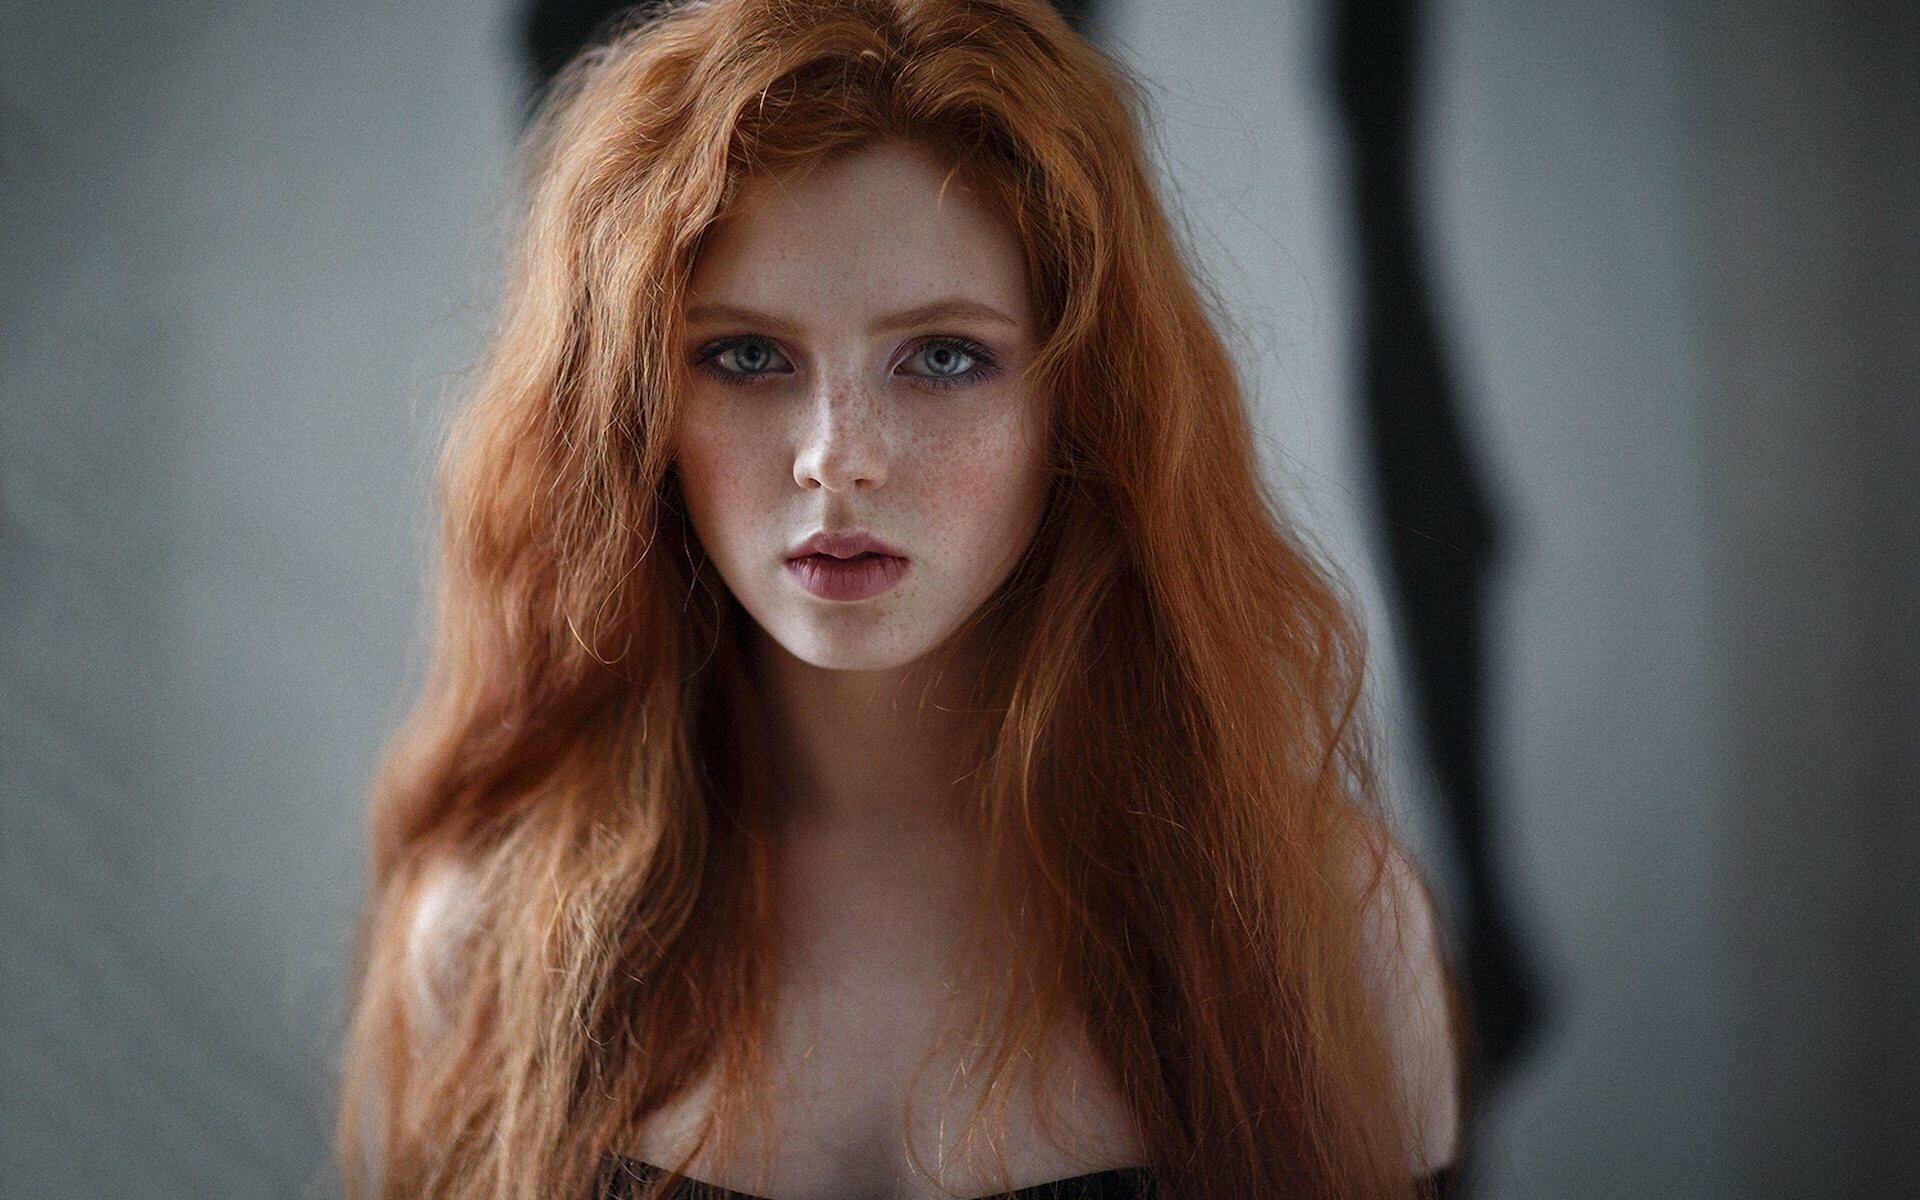 European glamour photo redhead